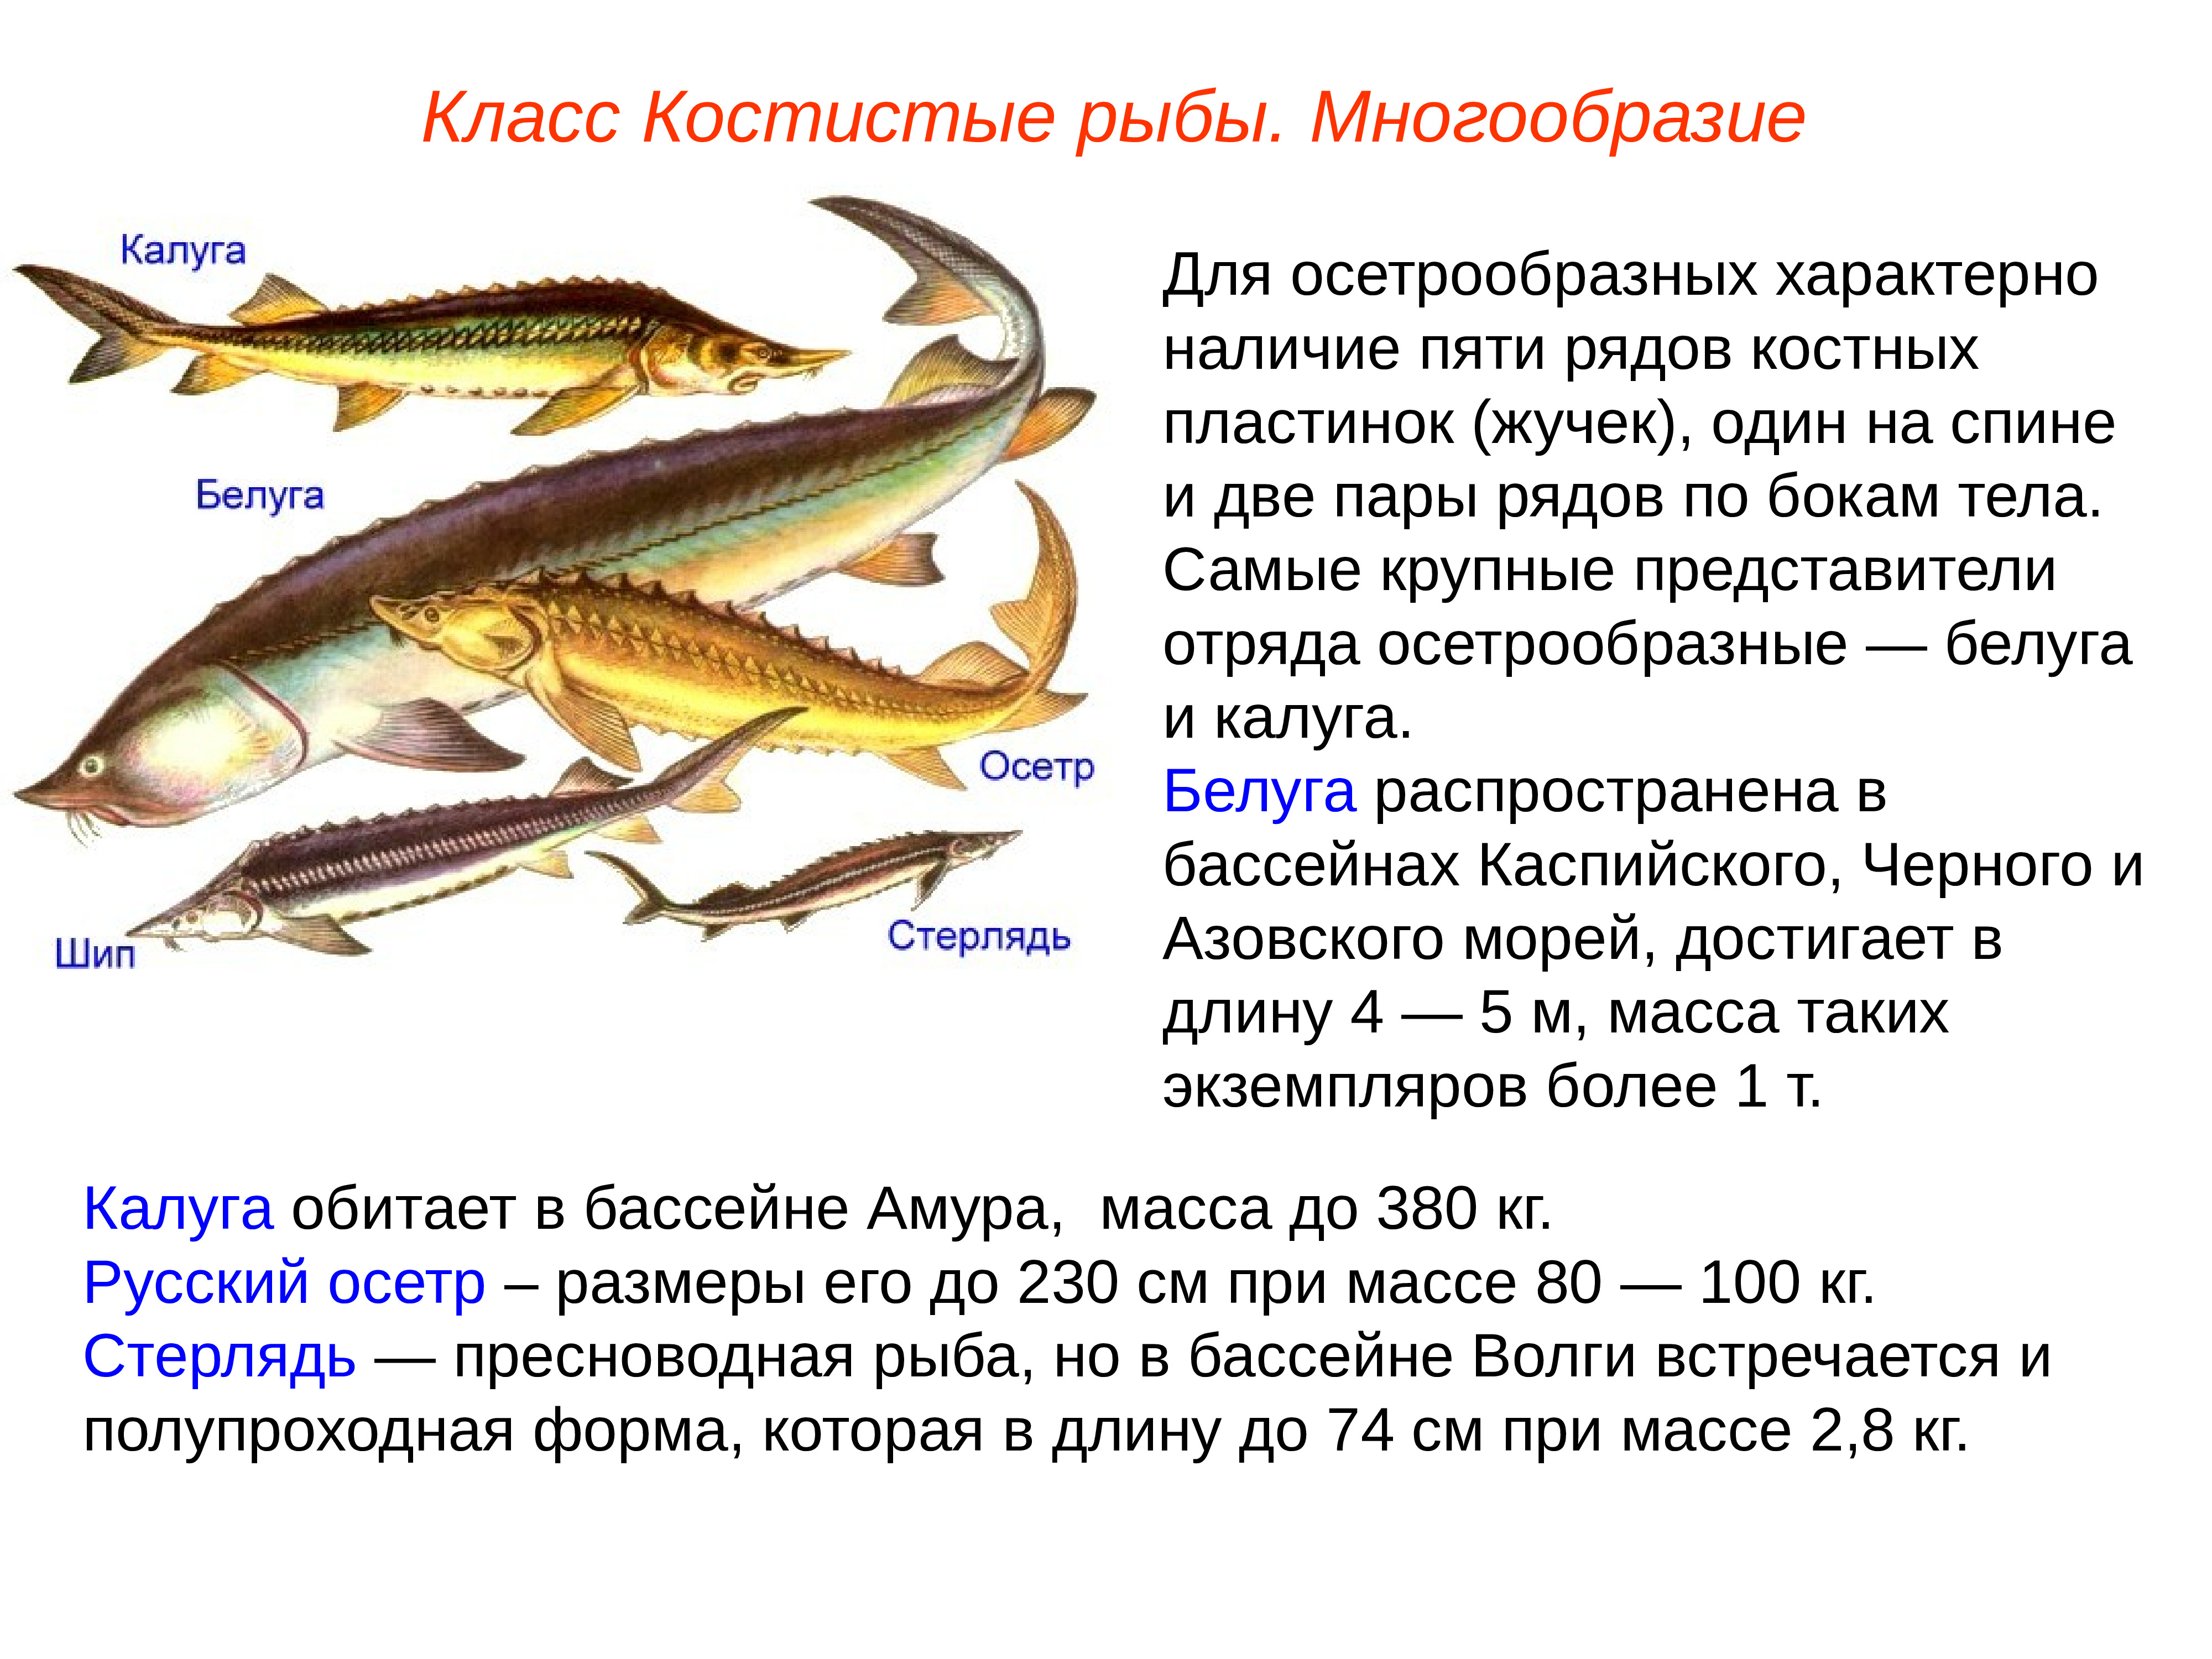 Особенности классов костные рыбы